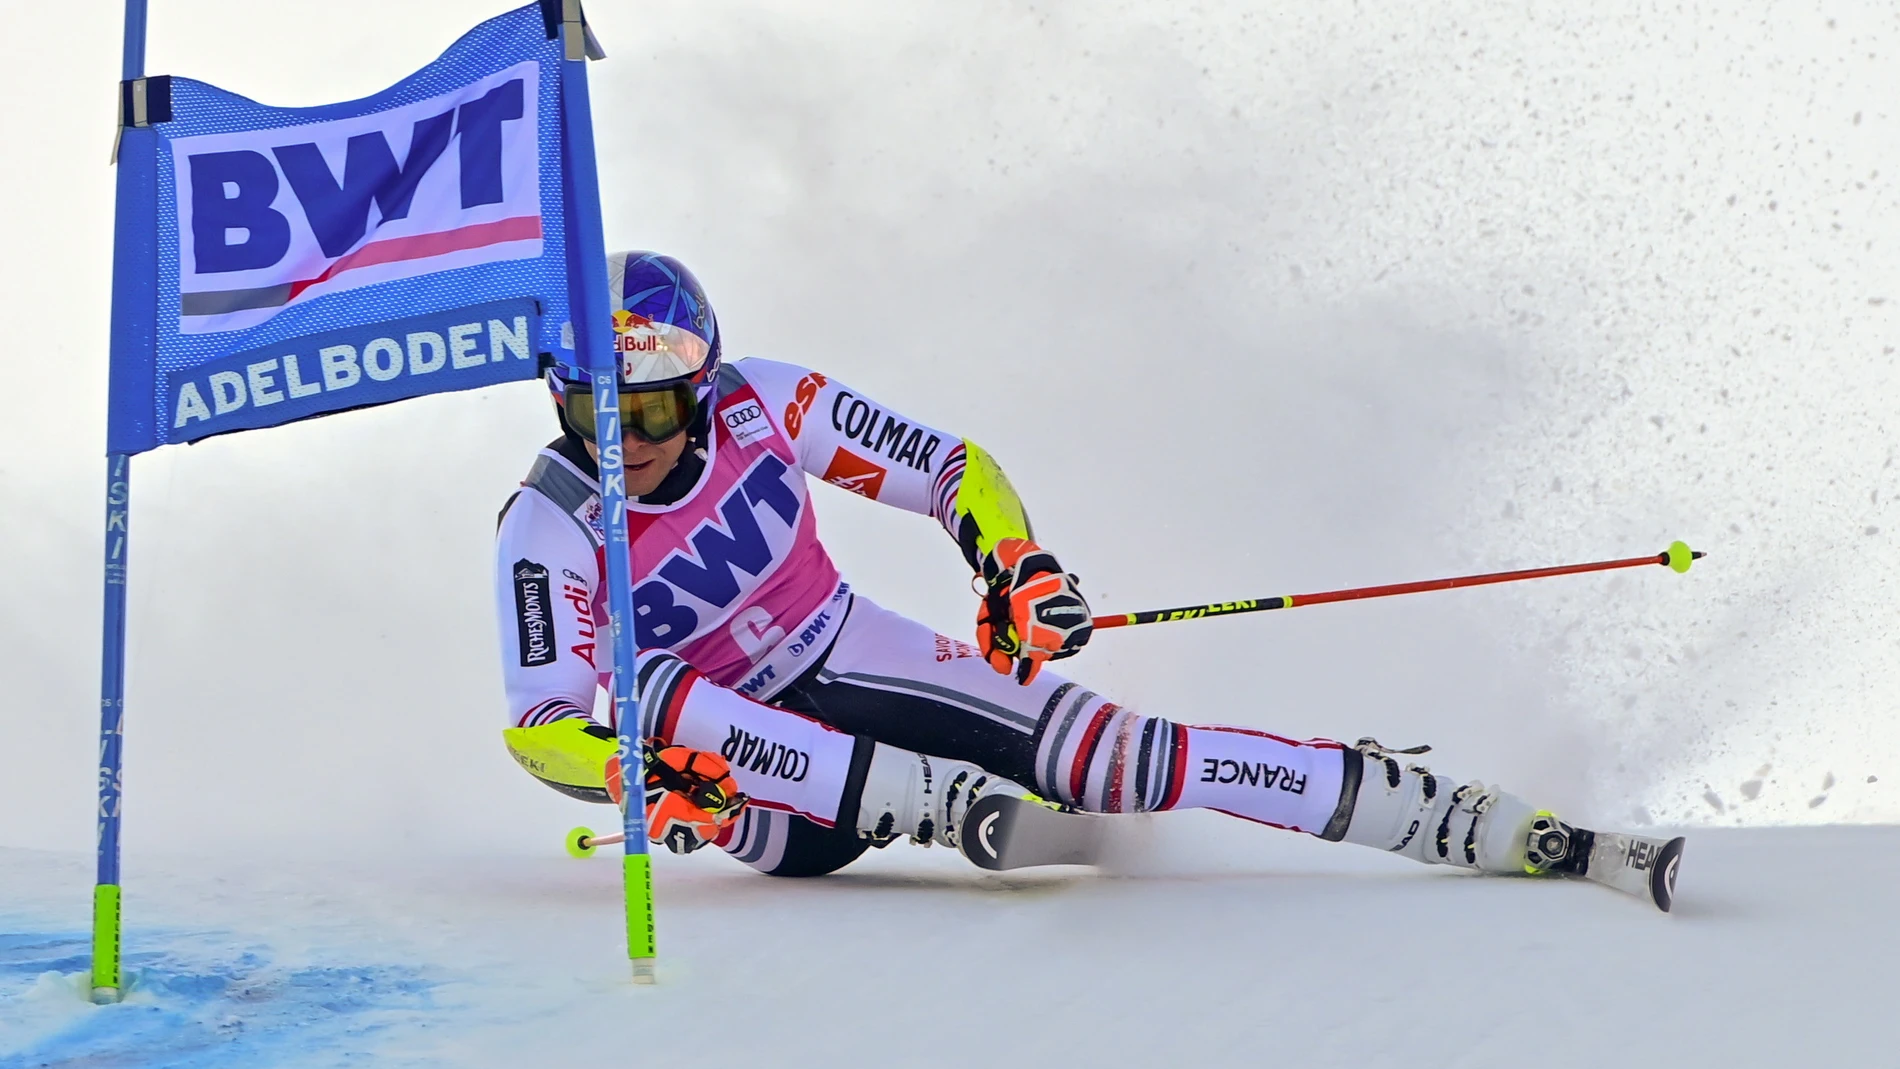 Adelboden (Suiza), 09/01/2021.- El francés Alexis Pinturault en acción durante la segunda prueba de la carrera de slalom gigante masculino de la Copa del Mundo de Esquí Alpino de la FIS en Adelboden (Suiza). EFE/EPA/JEAN-CHRISTOPHE BOTT